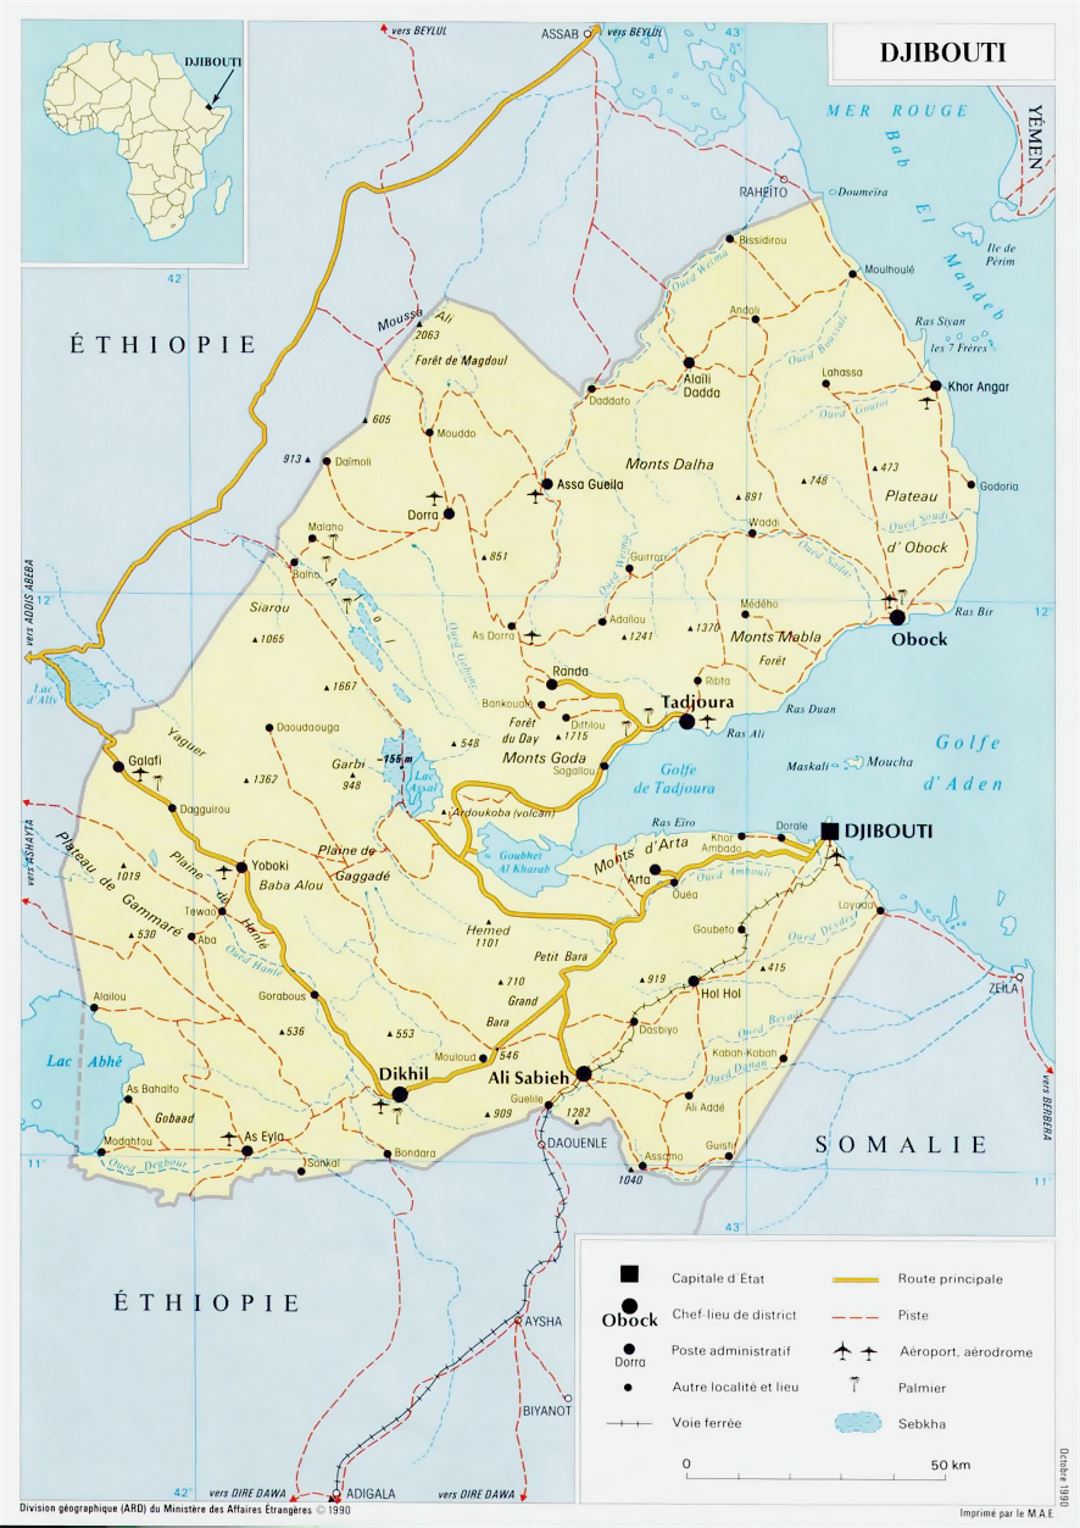 Детальная политическая карта Джибути с дорогами, железными дорогами, городами и аэропортами